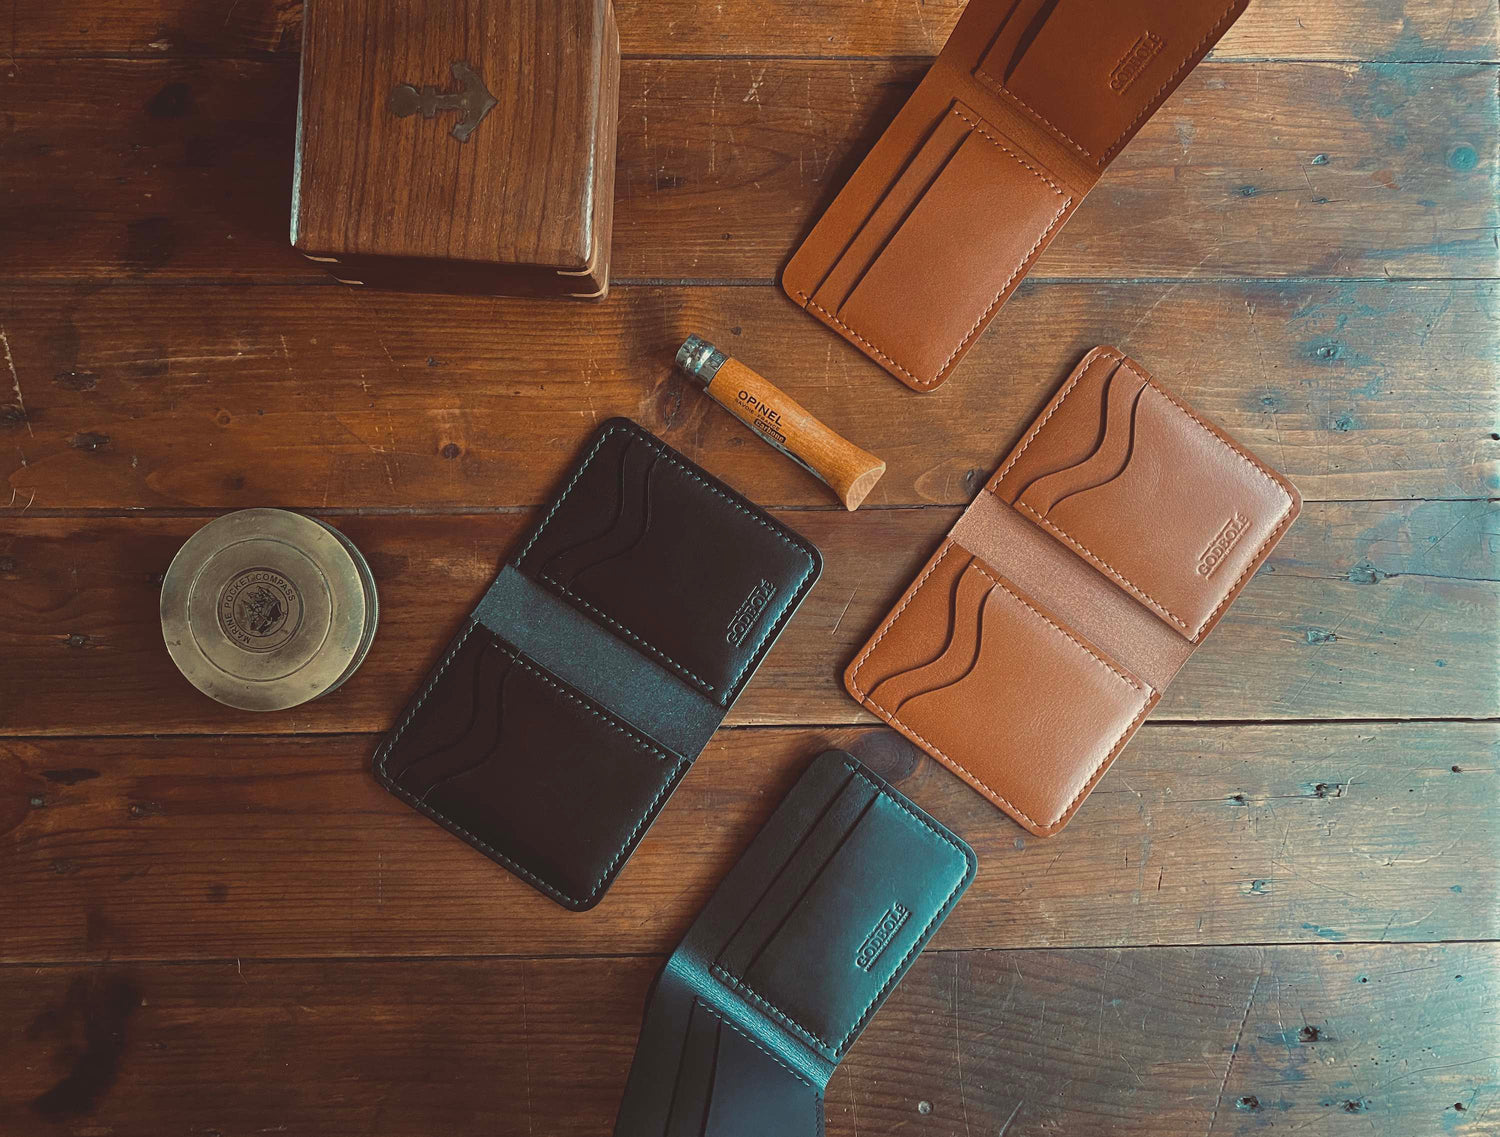 Full Grain Leather Wallets - Handmade Luxury Leather Goods – Godbole Gear